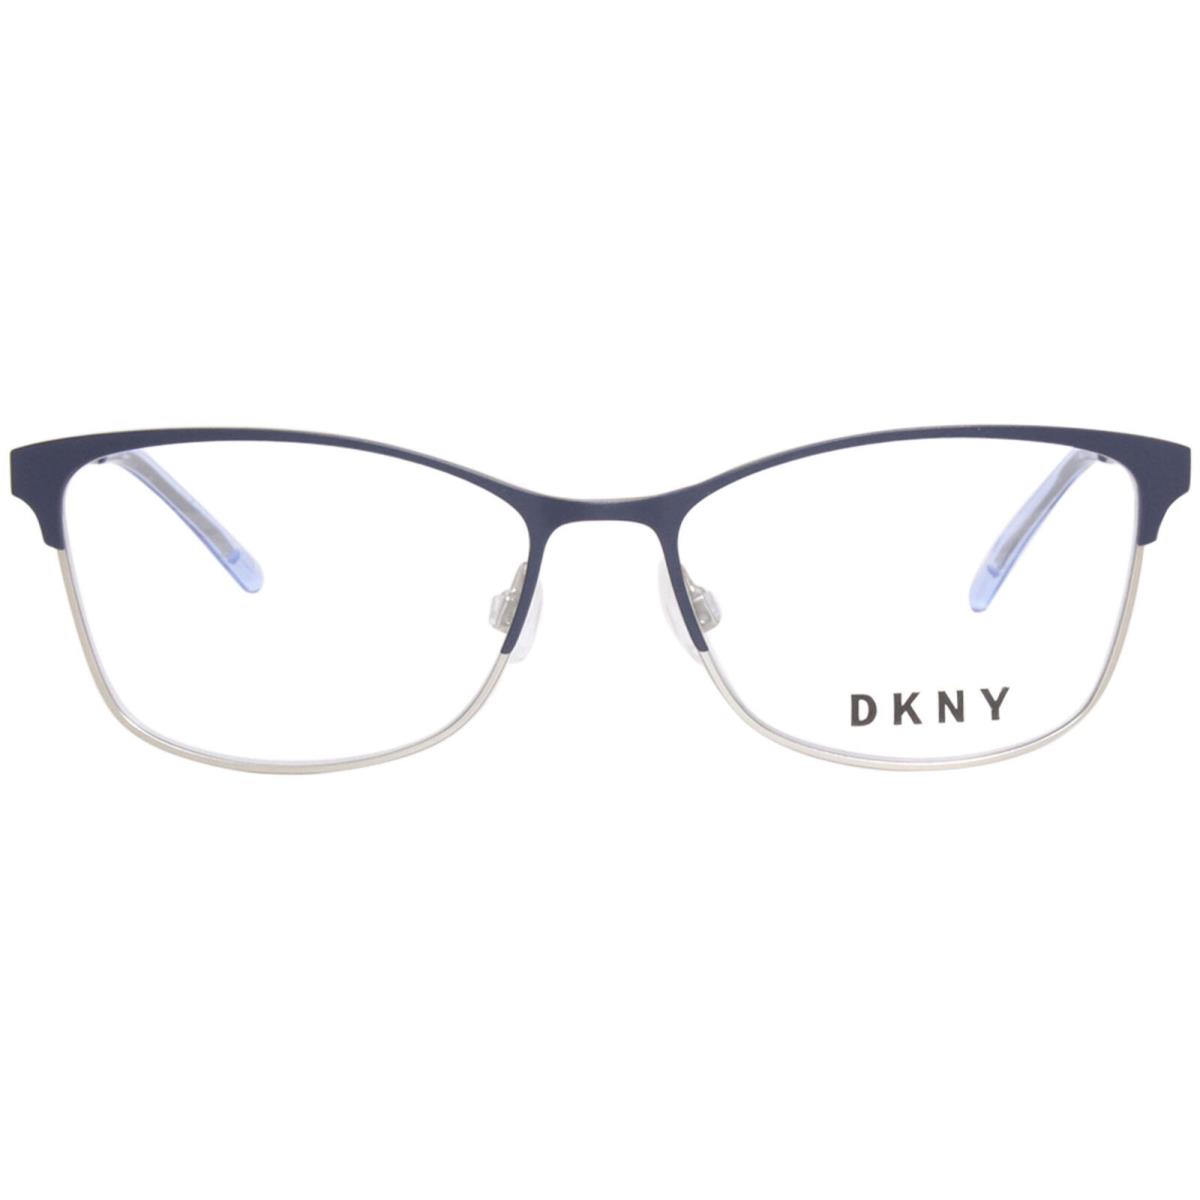 Dkny DK1028 400 Eyeglasses Frame Women`s Navy/silver Full Rim Square Shape 53mm